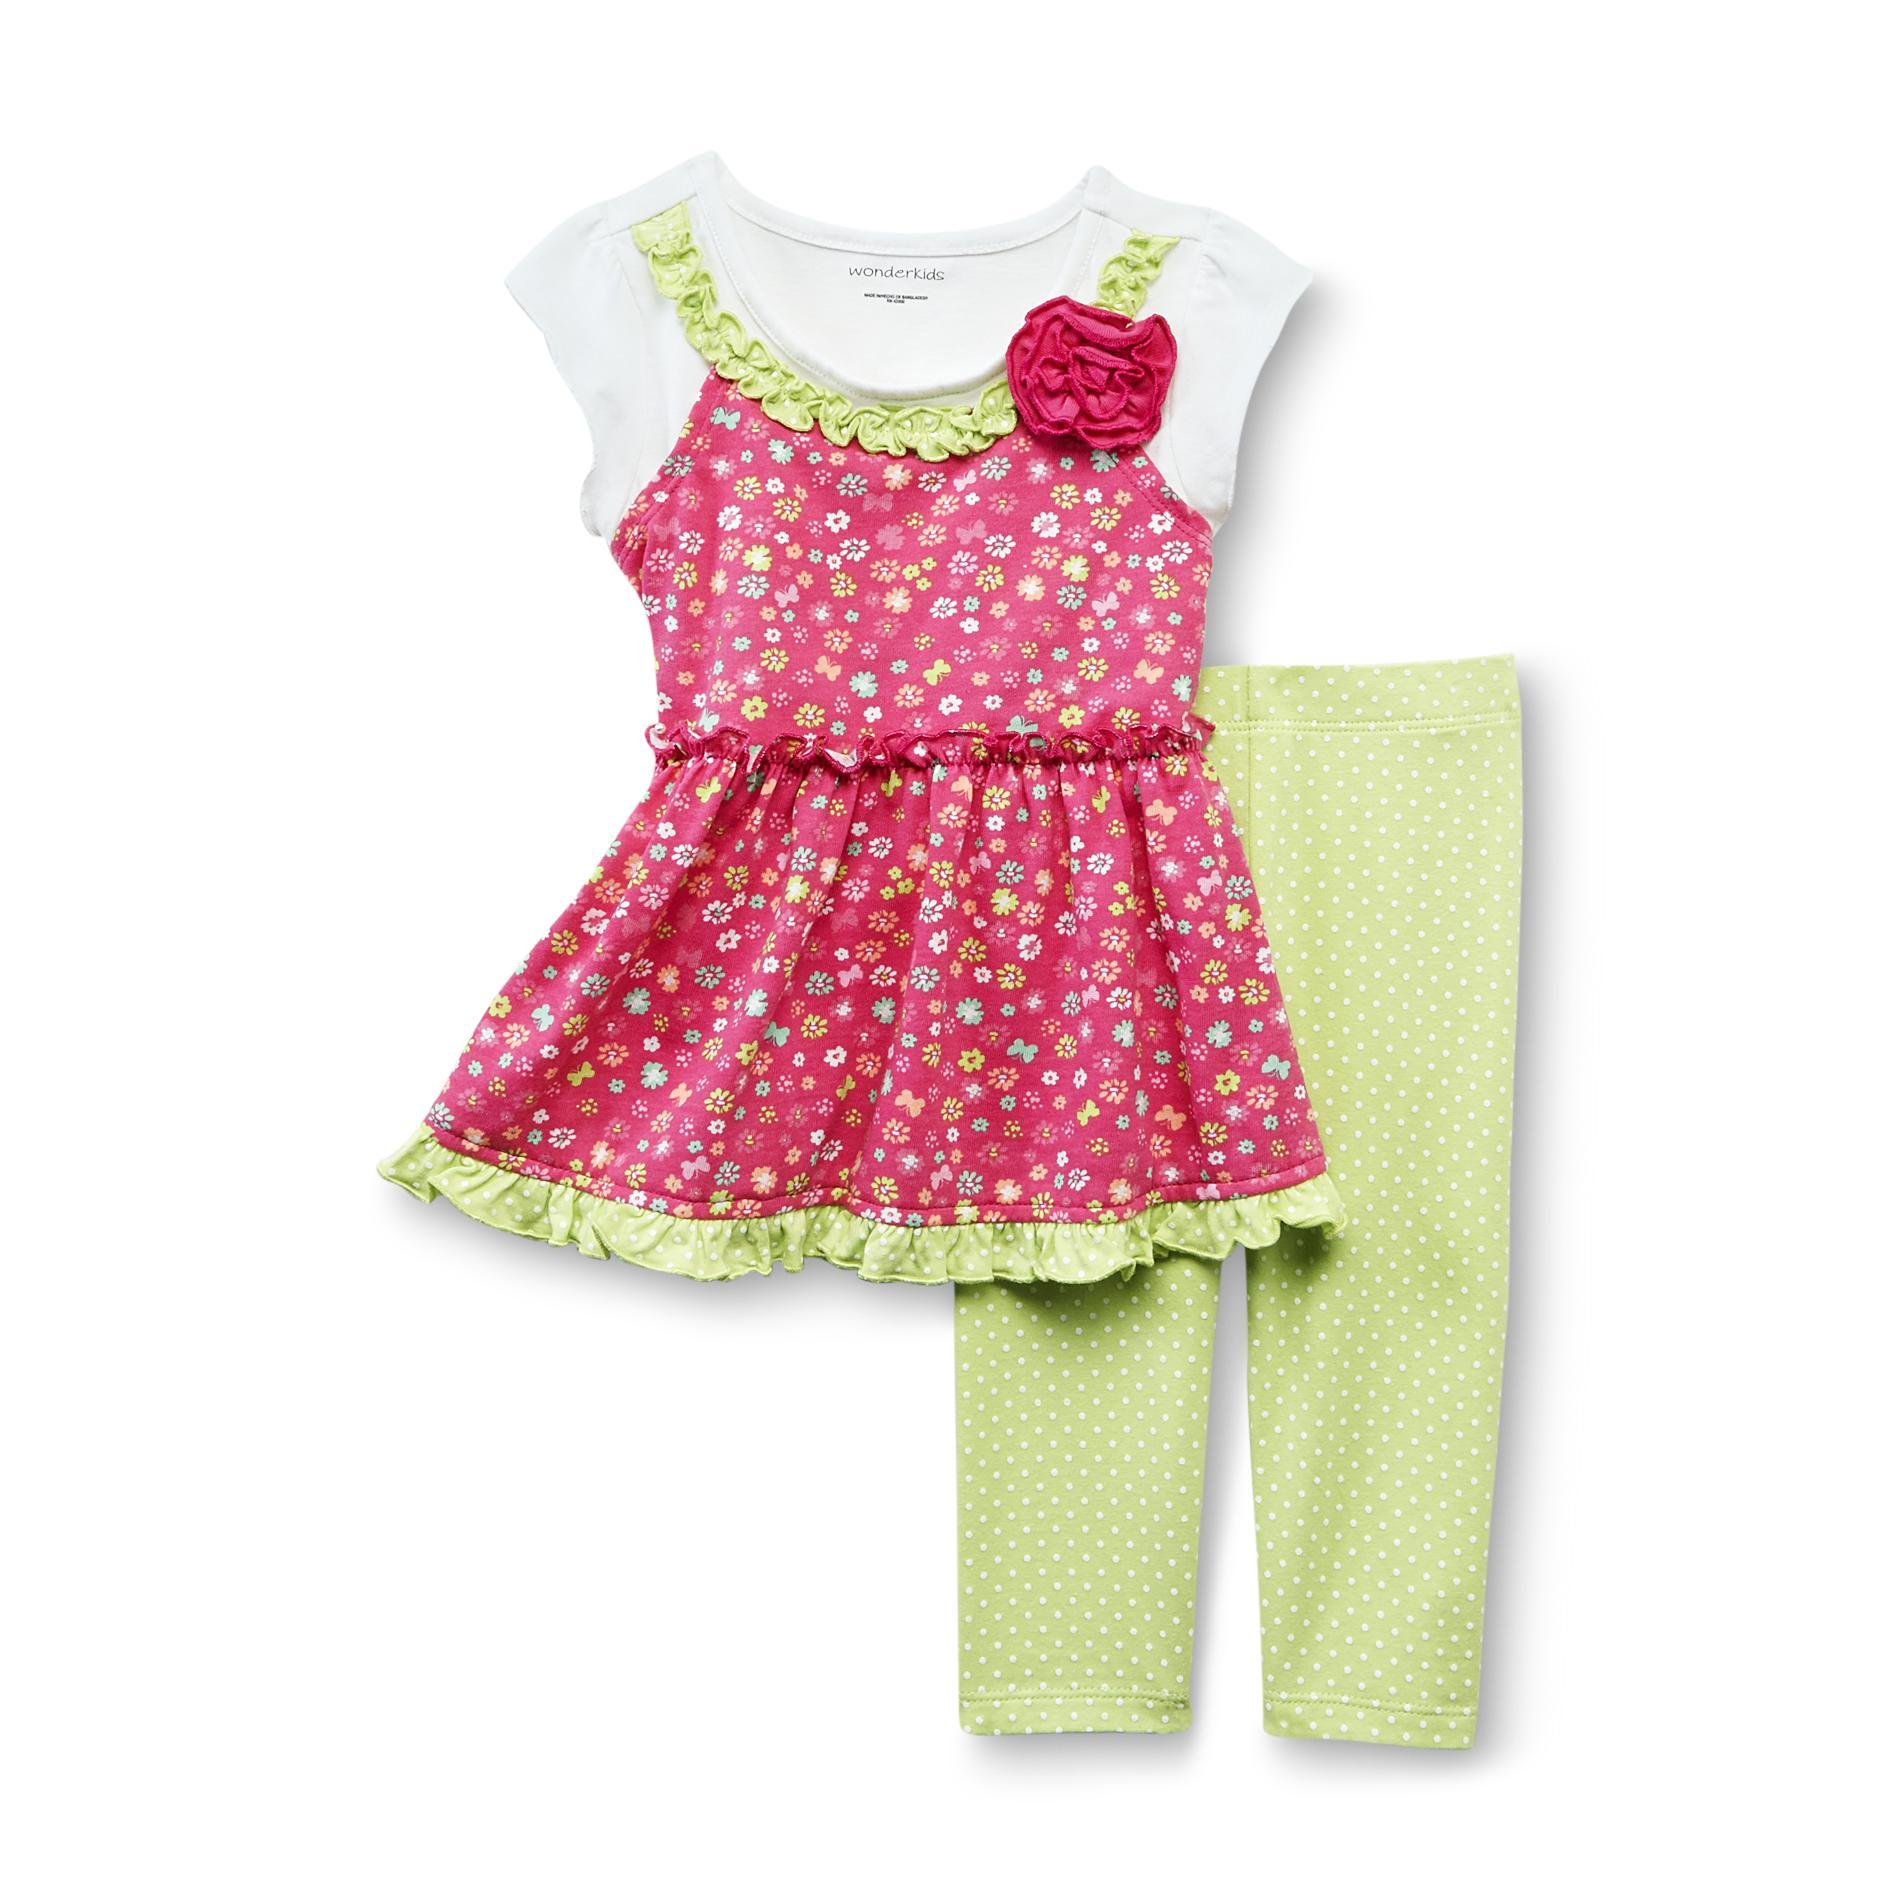 WonderKids Toddler Girl's Tunic & Leggings - Floral & Polka Dot